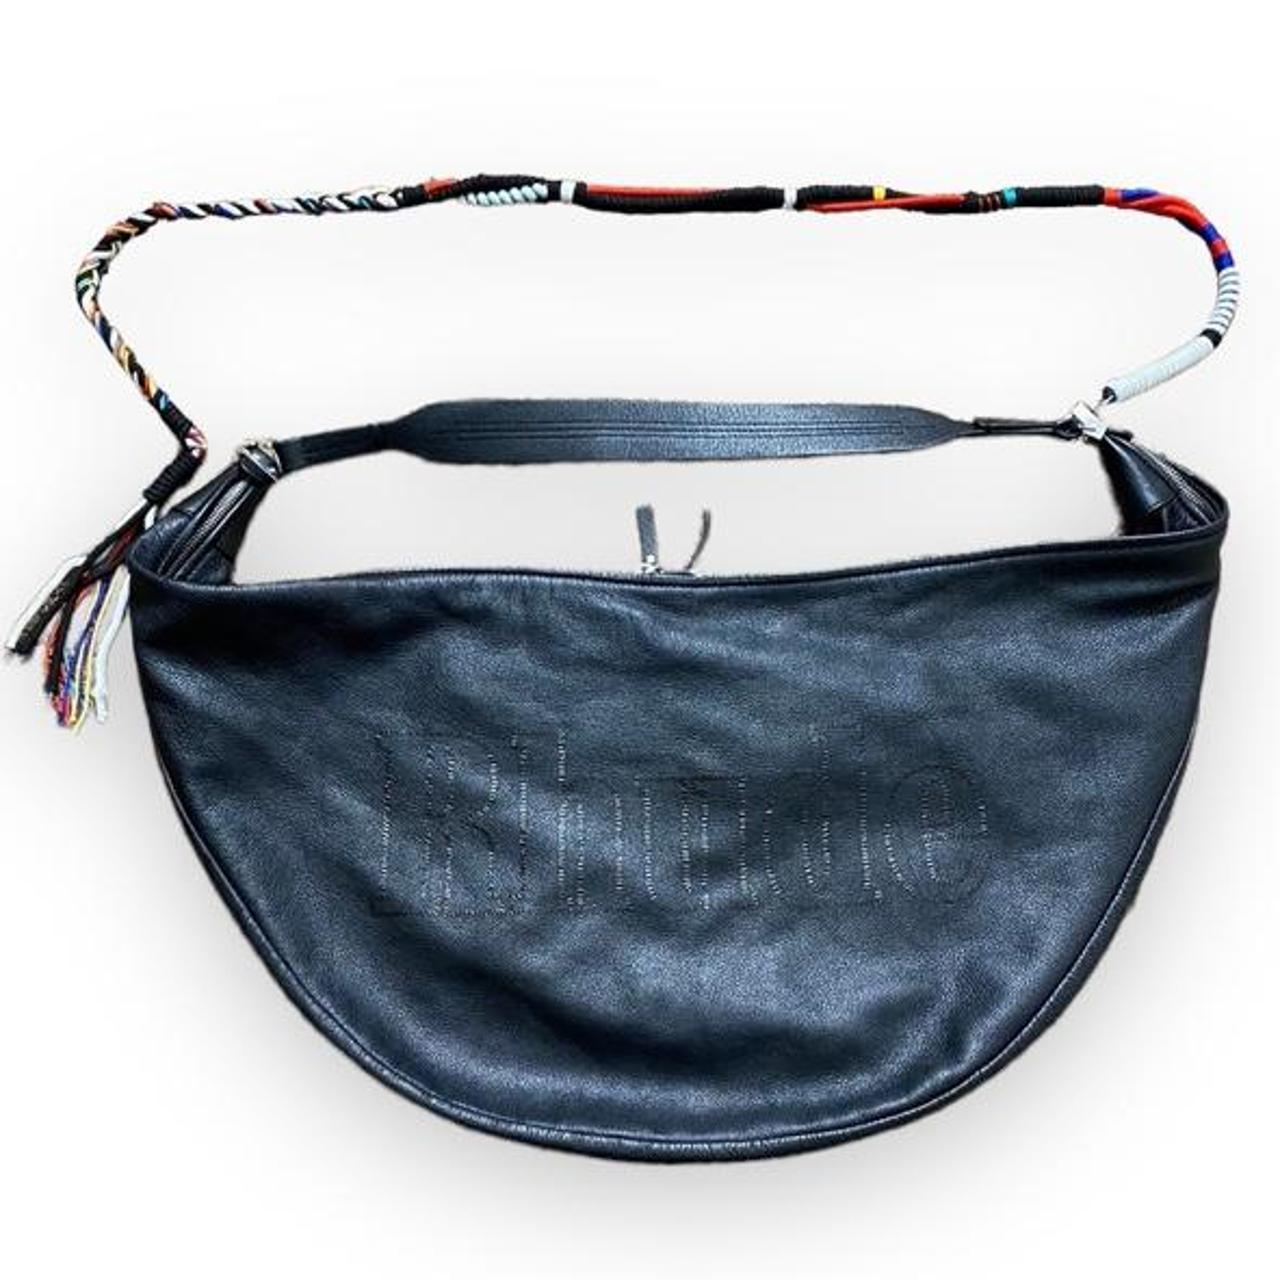 Product Image 1 - 🖤RARE🖤Rhude Body Bag. This bag